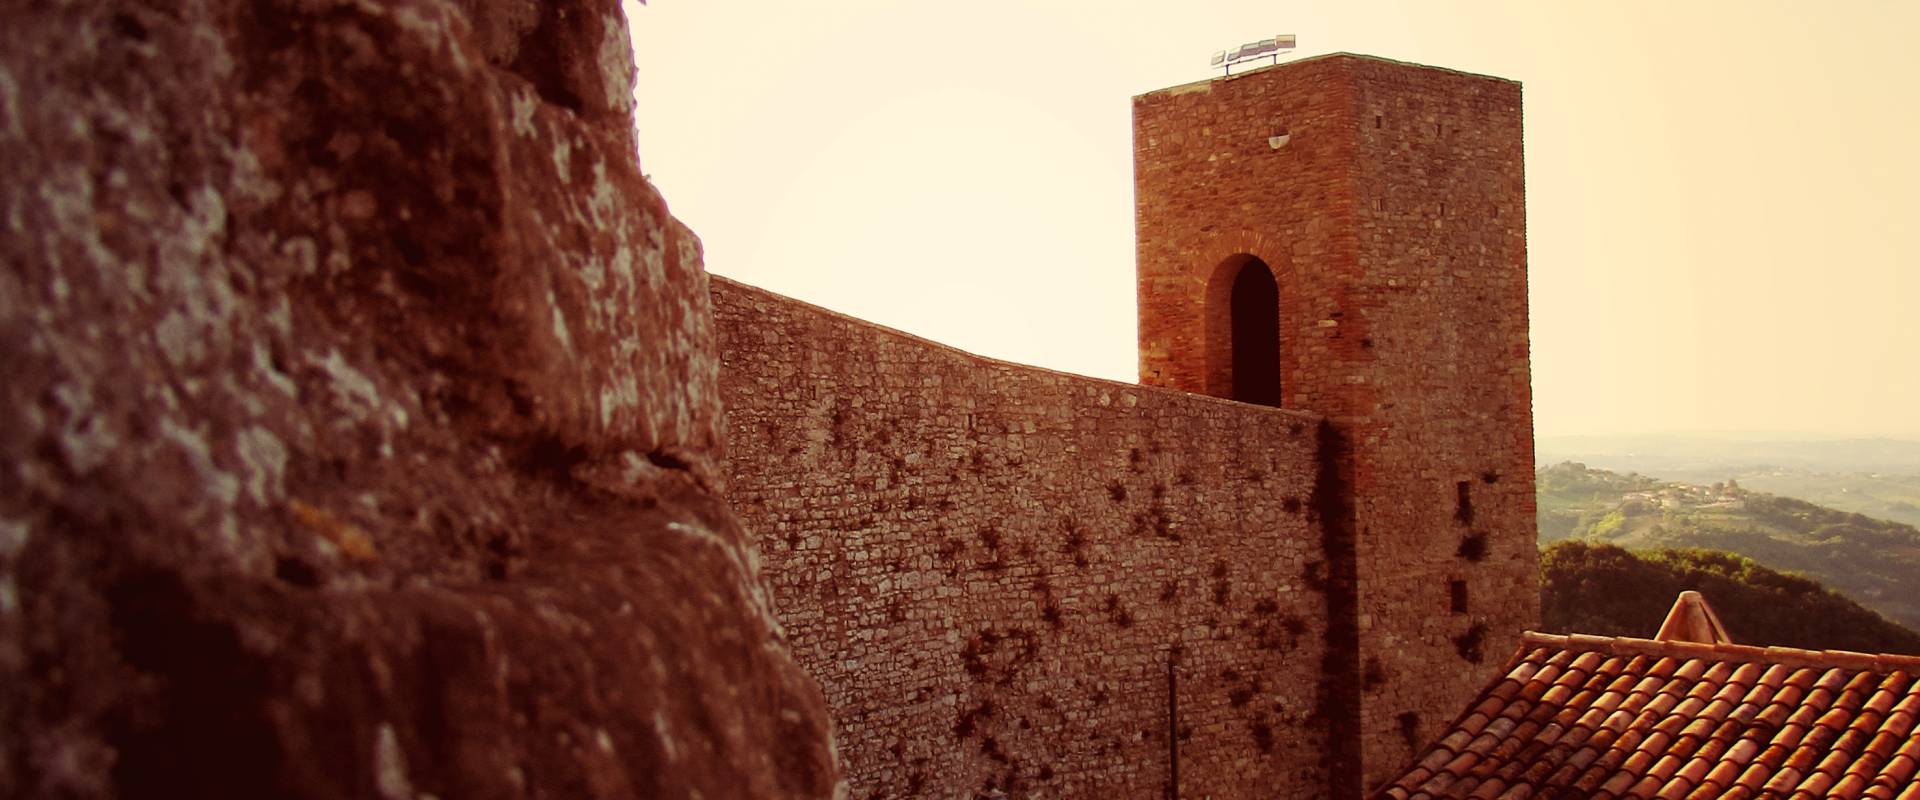 Antiche luci riflettono gli antichi racconti della Rocca foto di Larabraga19